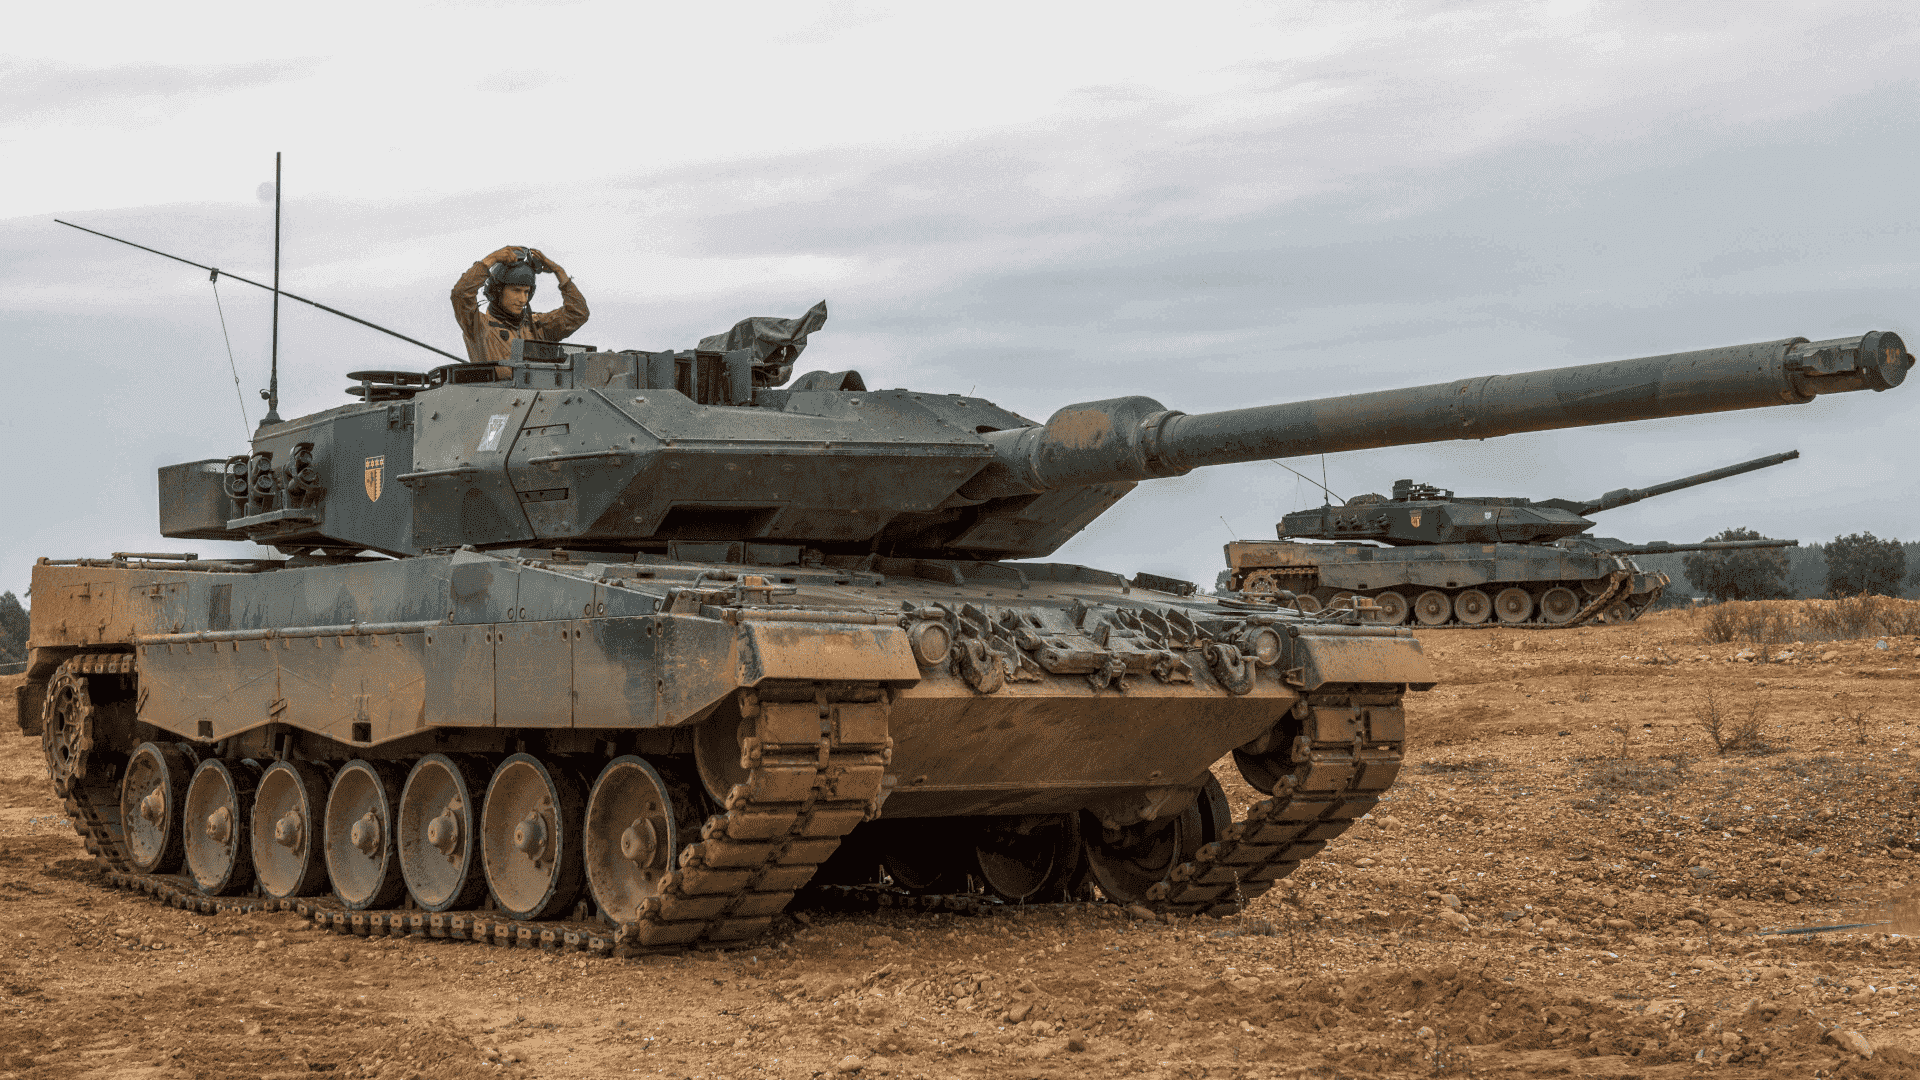 Portuguese Leopard 2A6